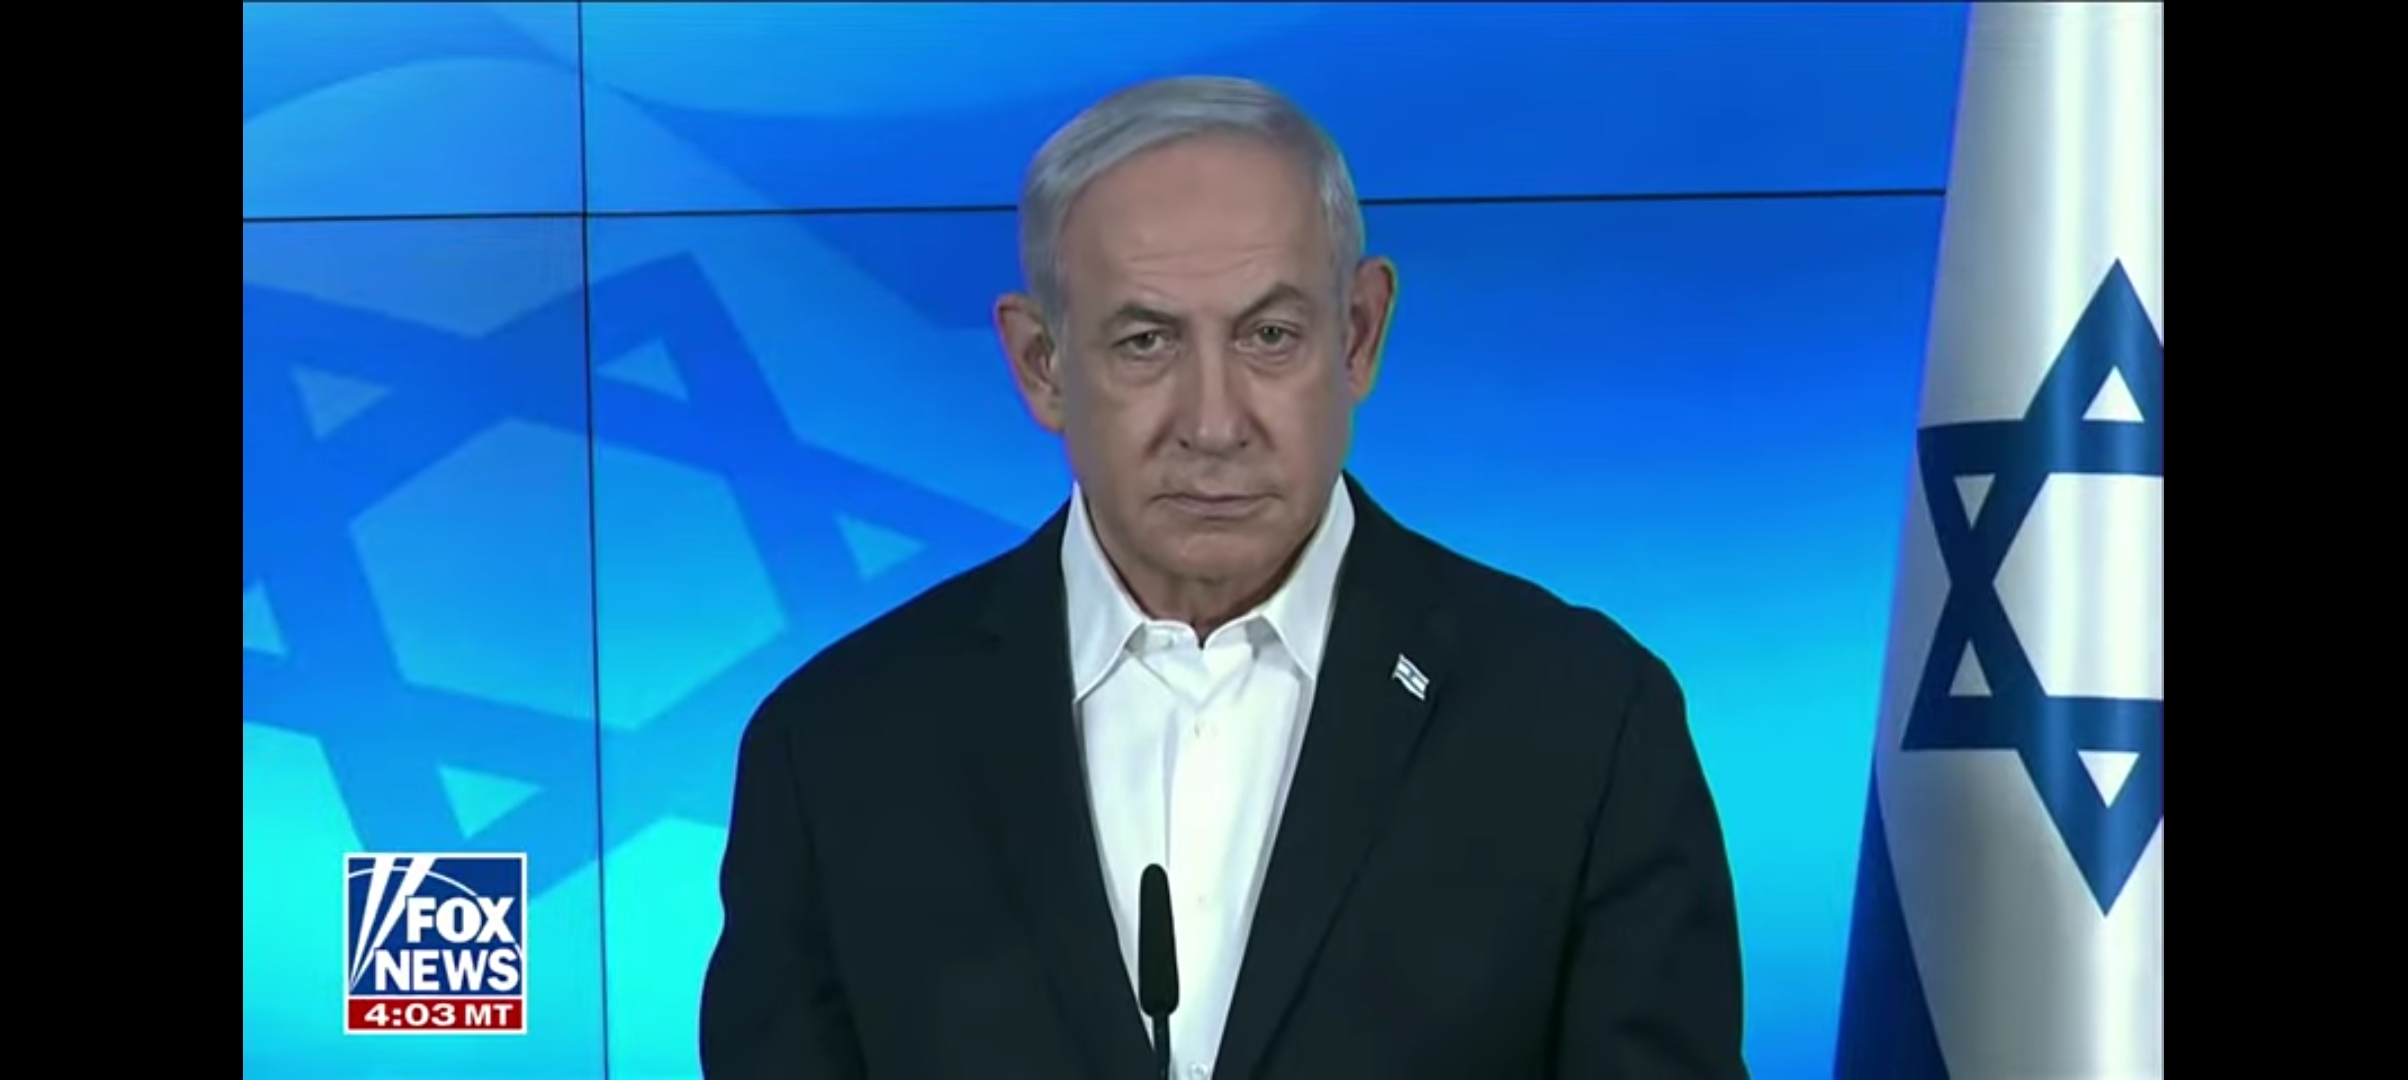 Kicep Setelah Dikritik Biden, PM Israel Netanyahu Ralat Pernyataan Ingin Kuasai Gaza